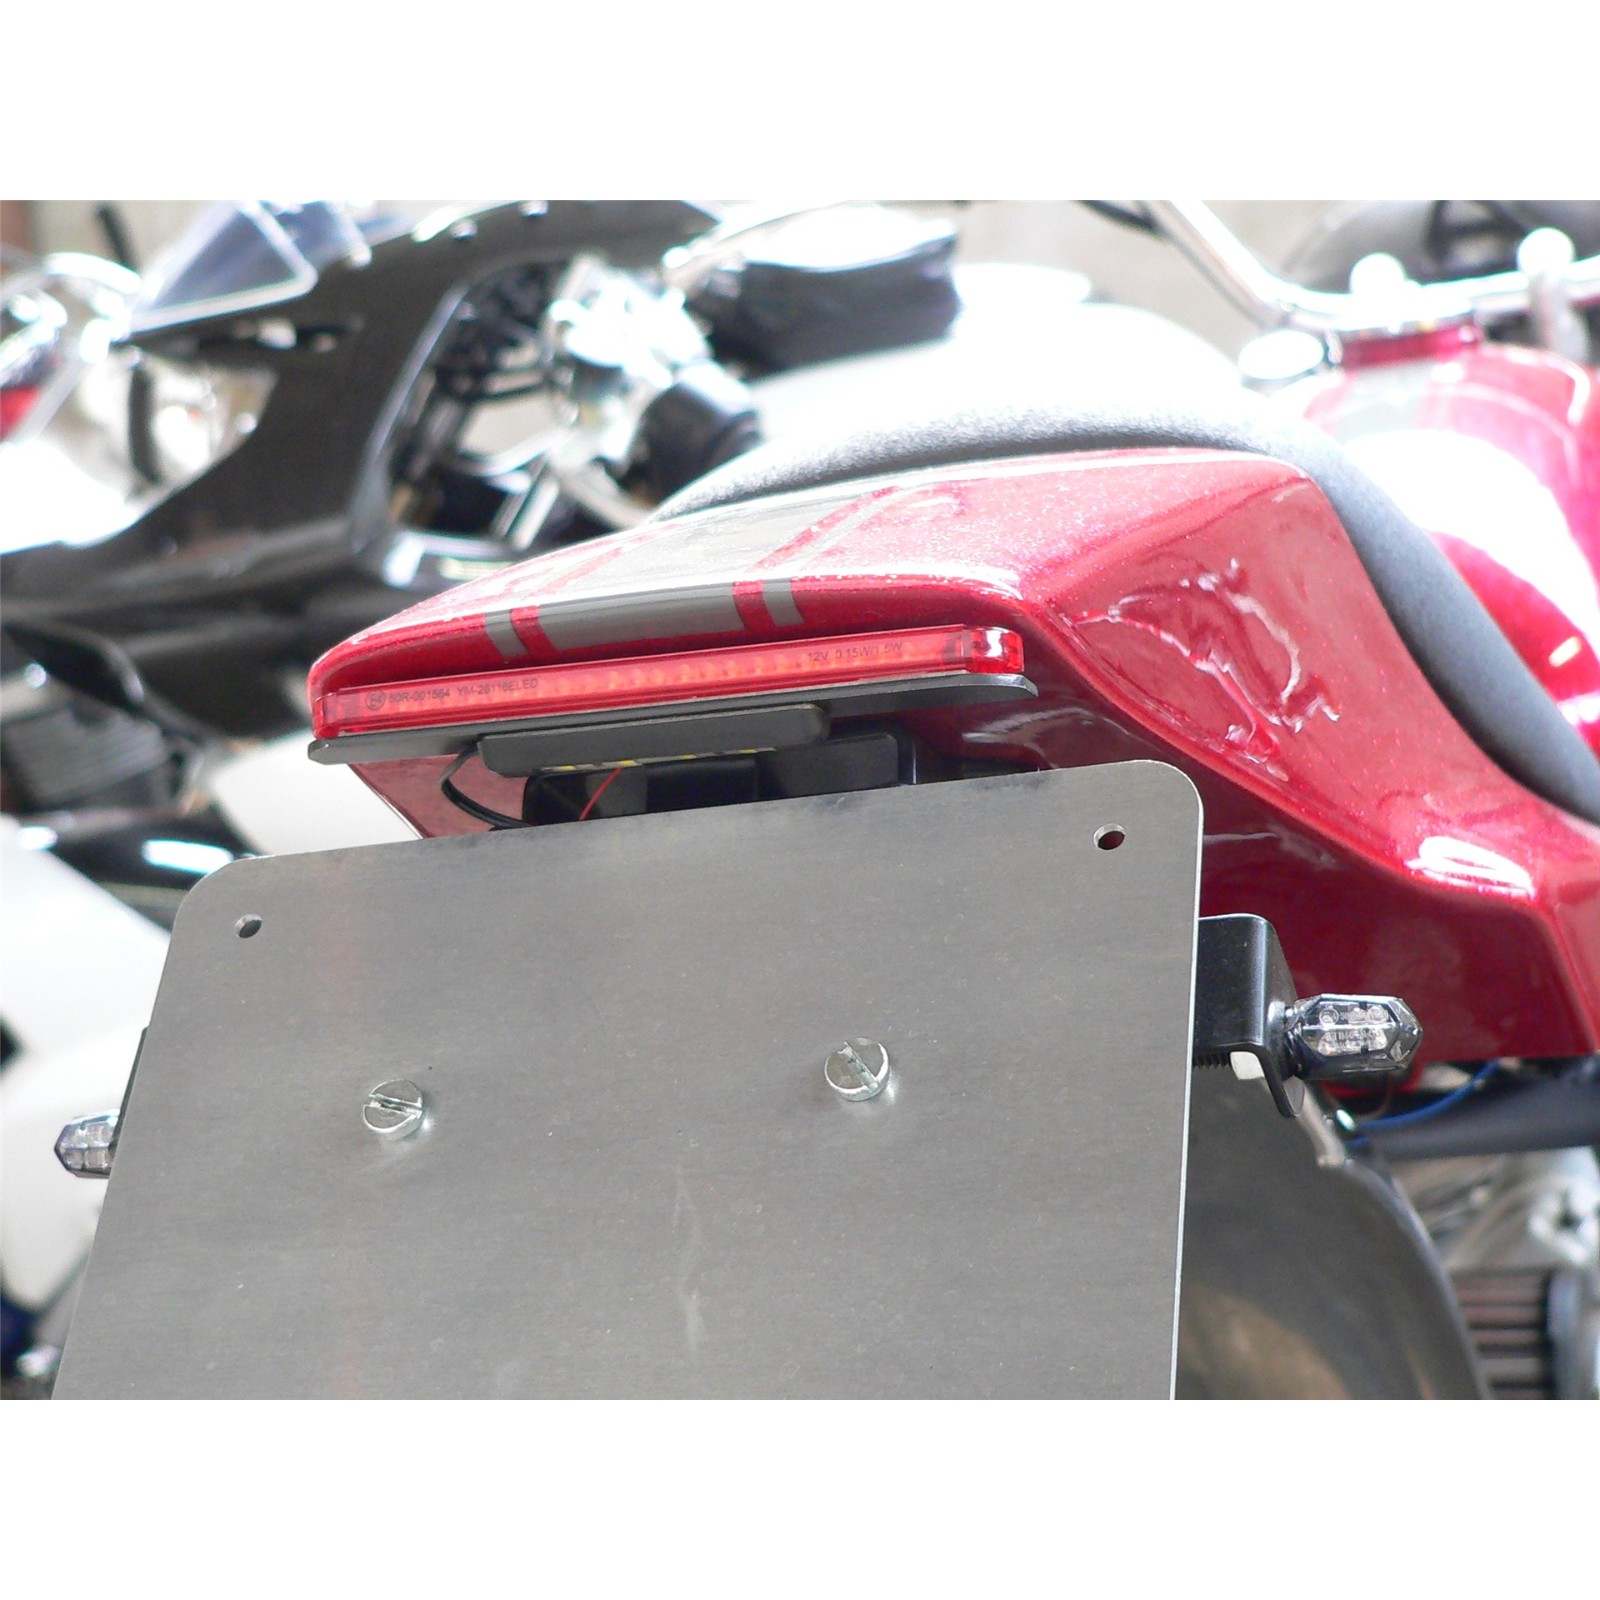 2 Stück Universal Motorrad Rücklicht Motorrad Bremsstoppsignal Licht 48led  Flexible Streifen Kennzeichenbeleuchtung Für Motorrad, Sparen Sie Mehr Mit  Ausverkaufsangeboten